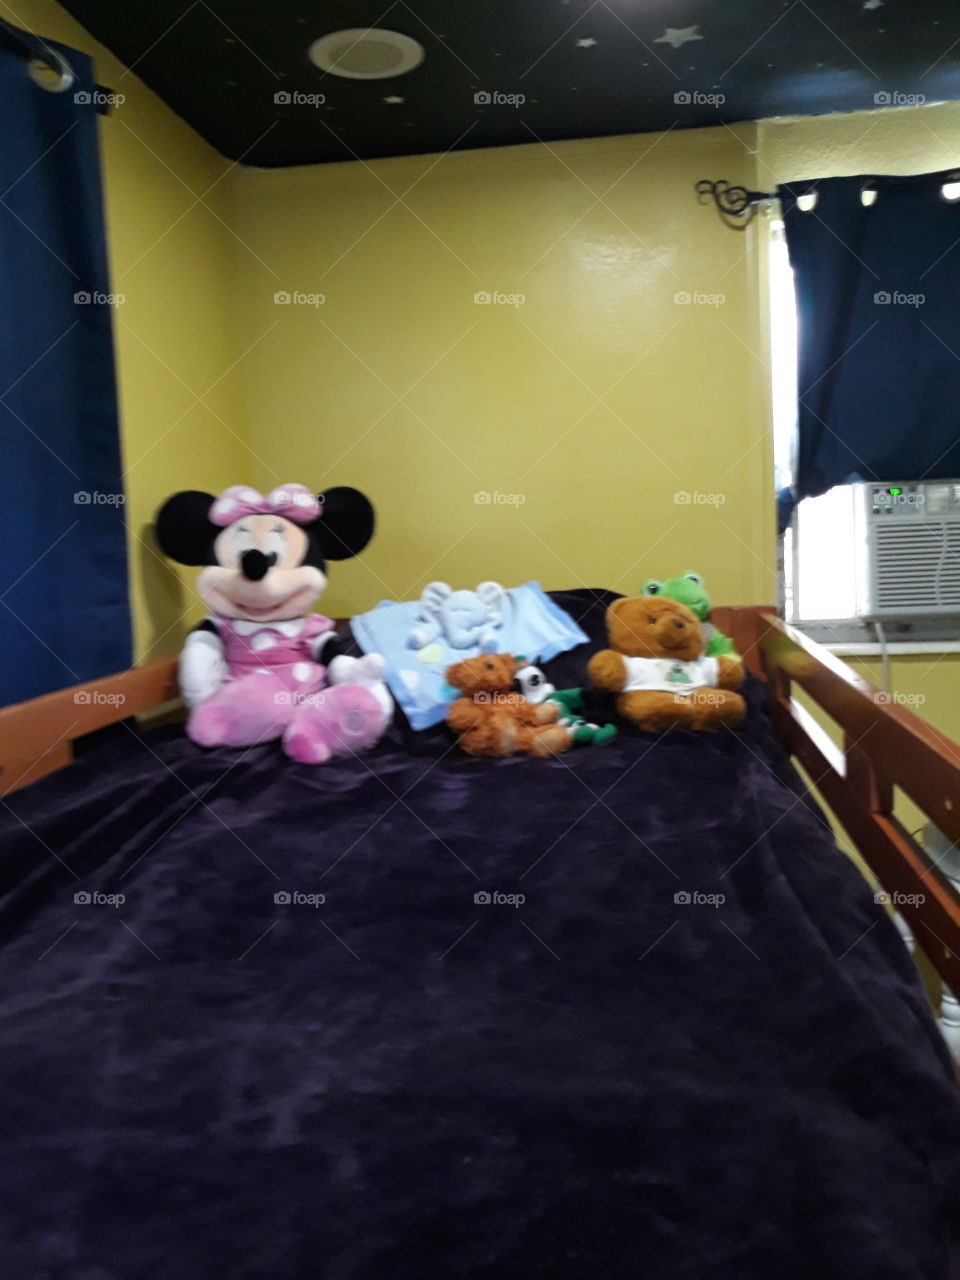 kids bedroom